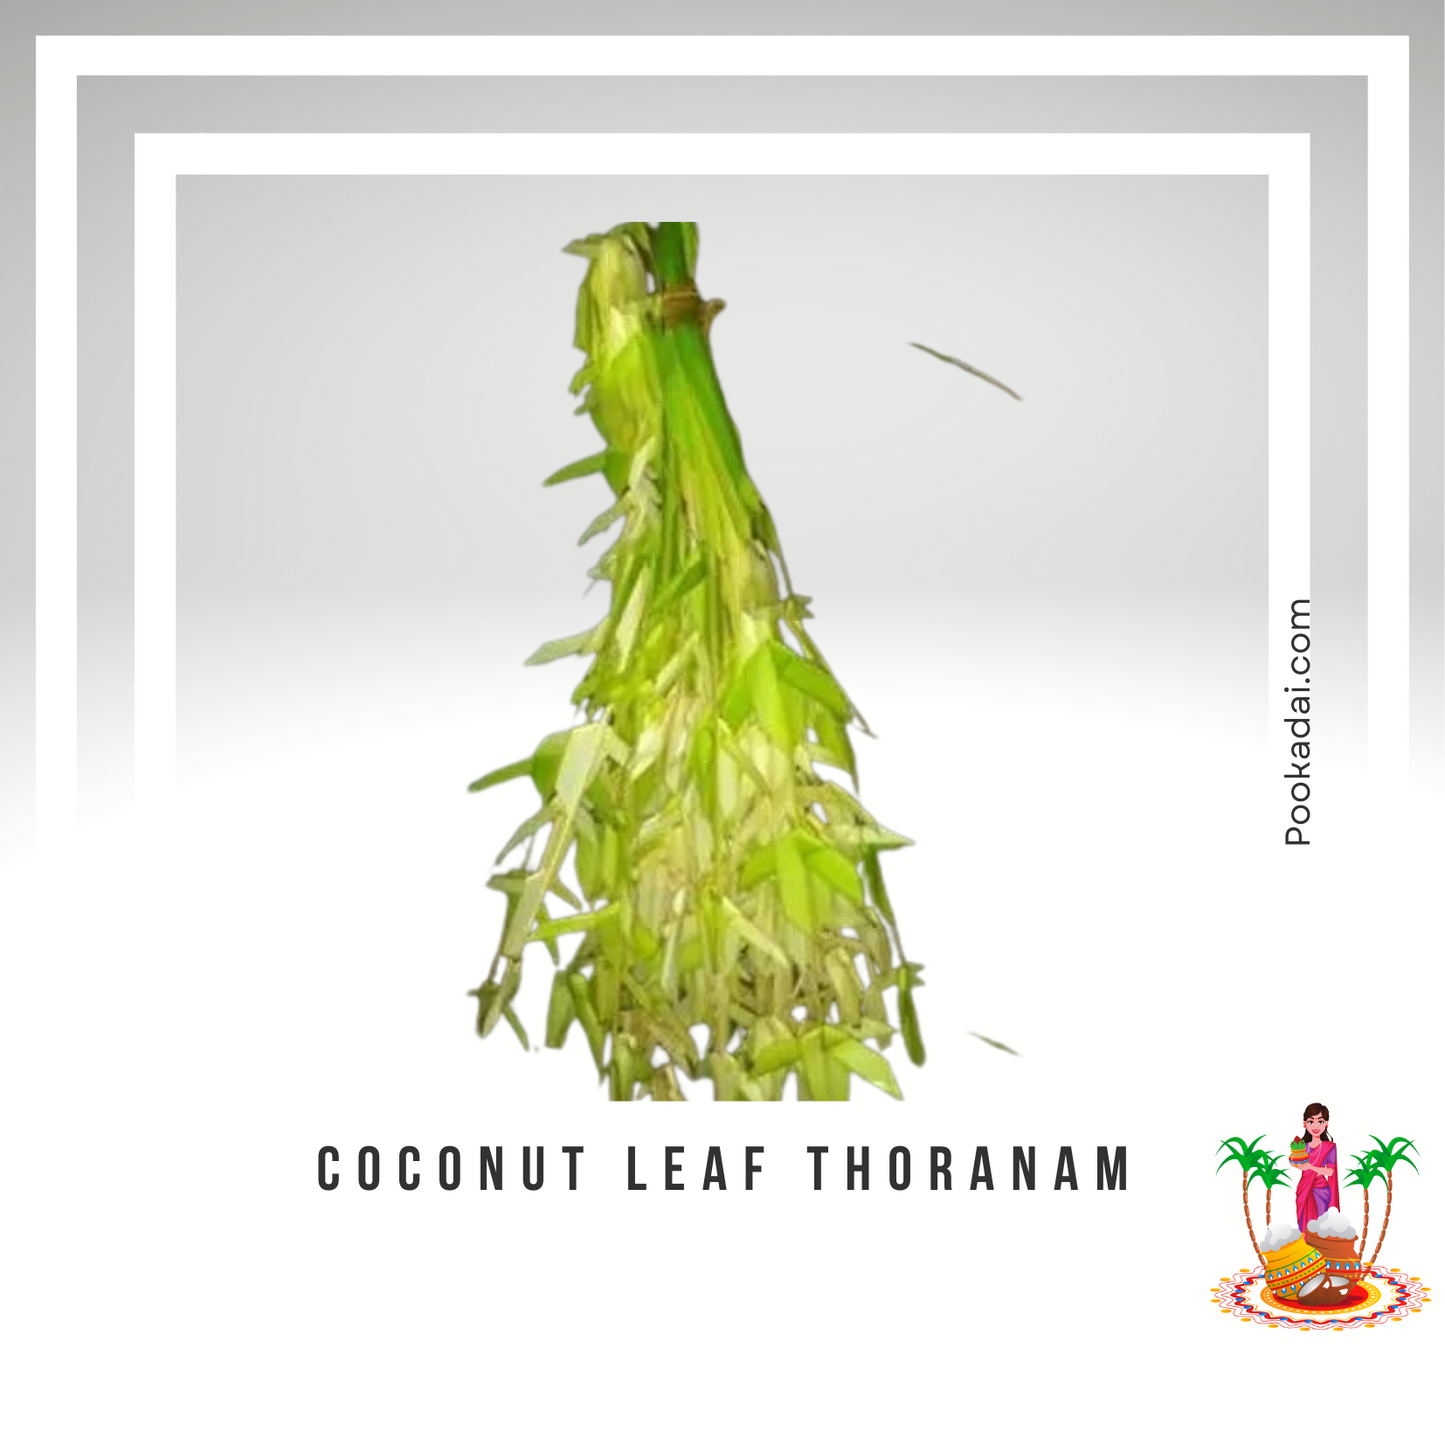 Coconut leaf Thoranam